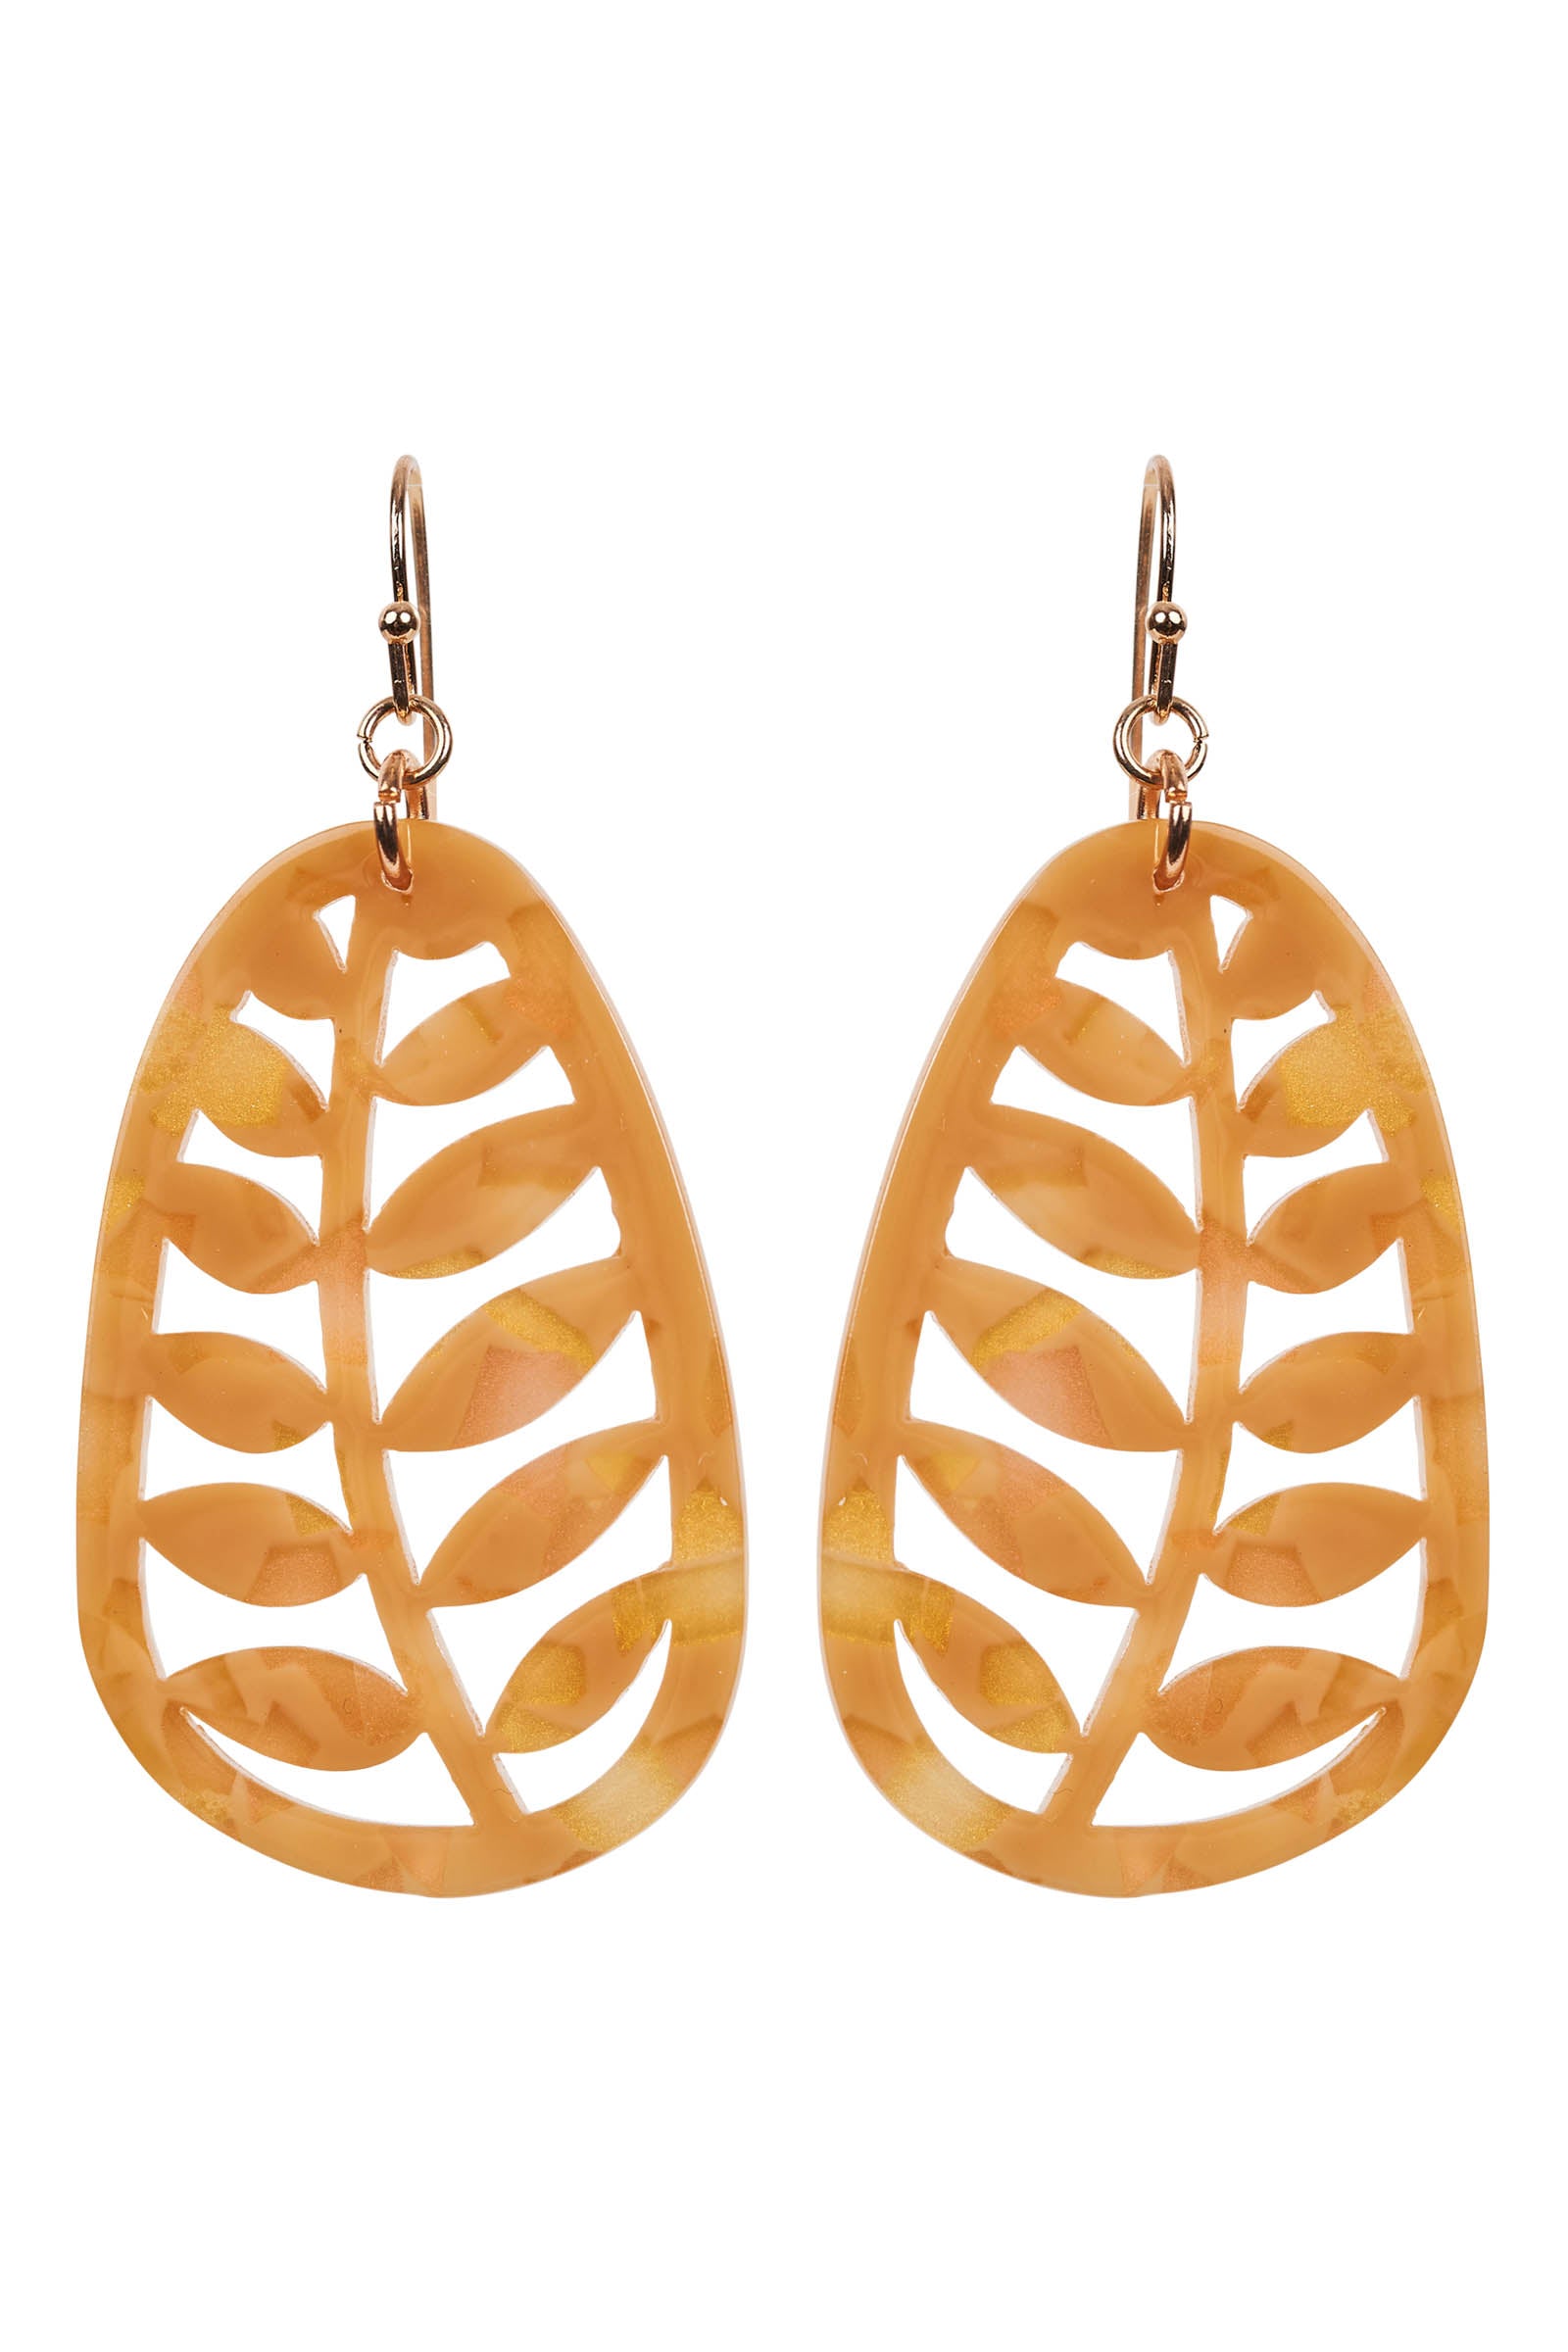 Elan Leaf Earring - Honey - eb&ive Earring